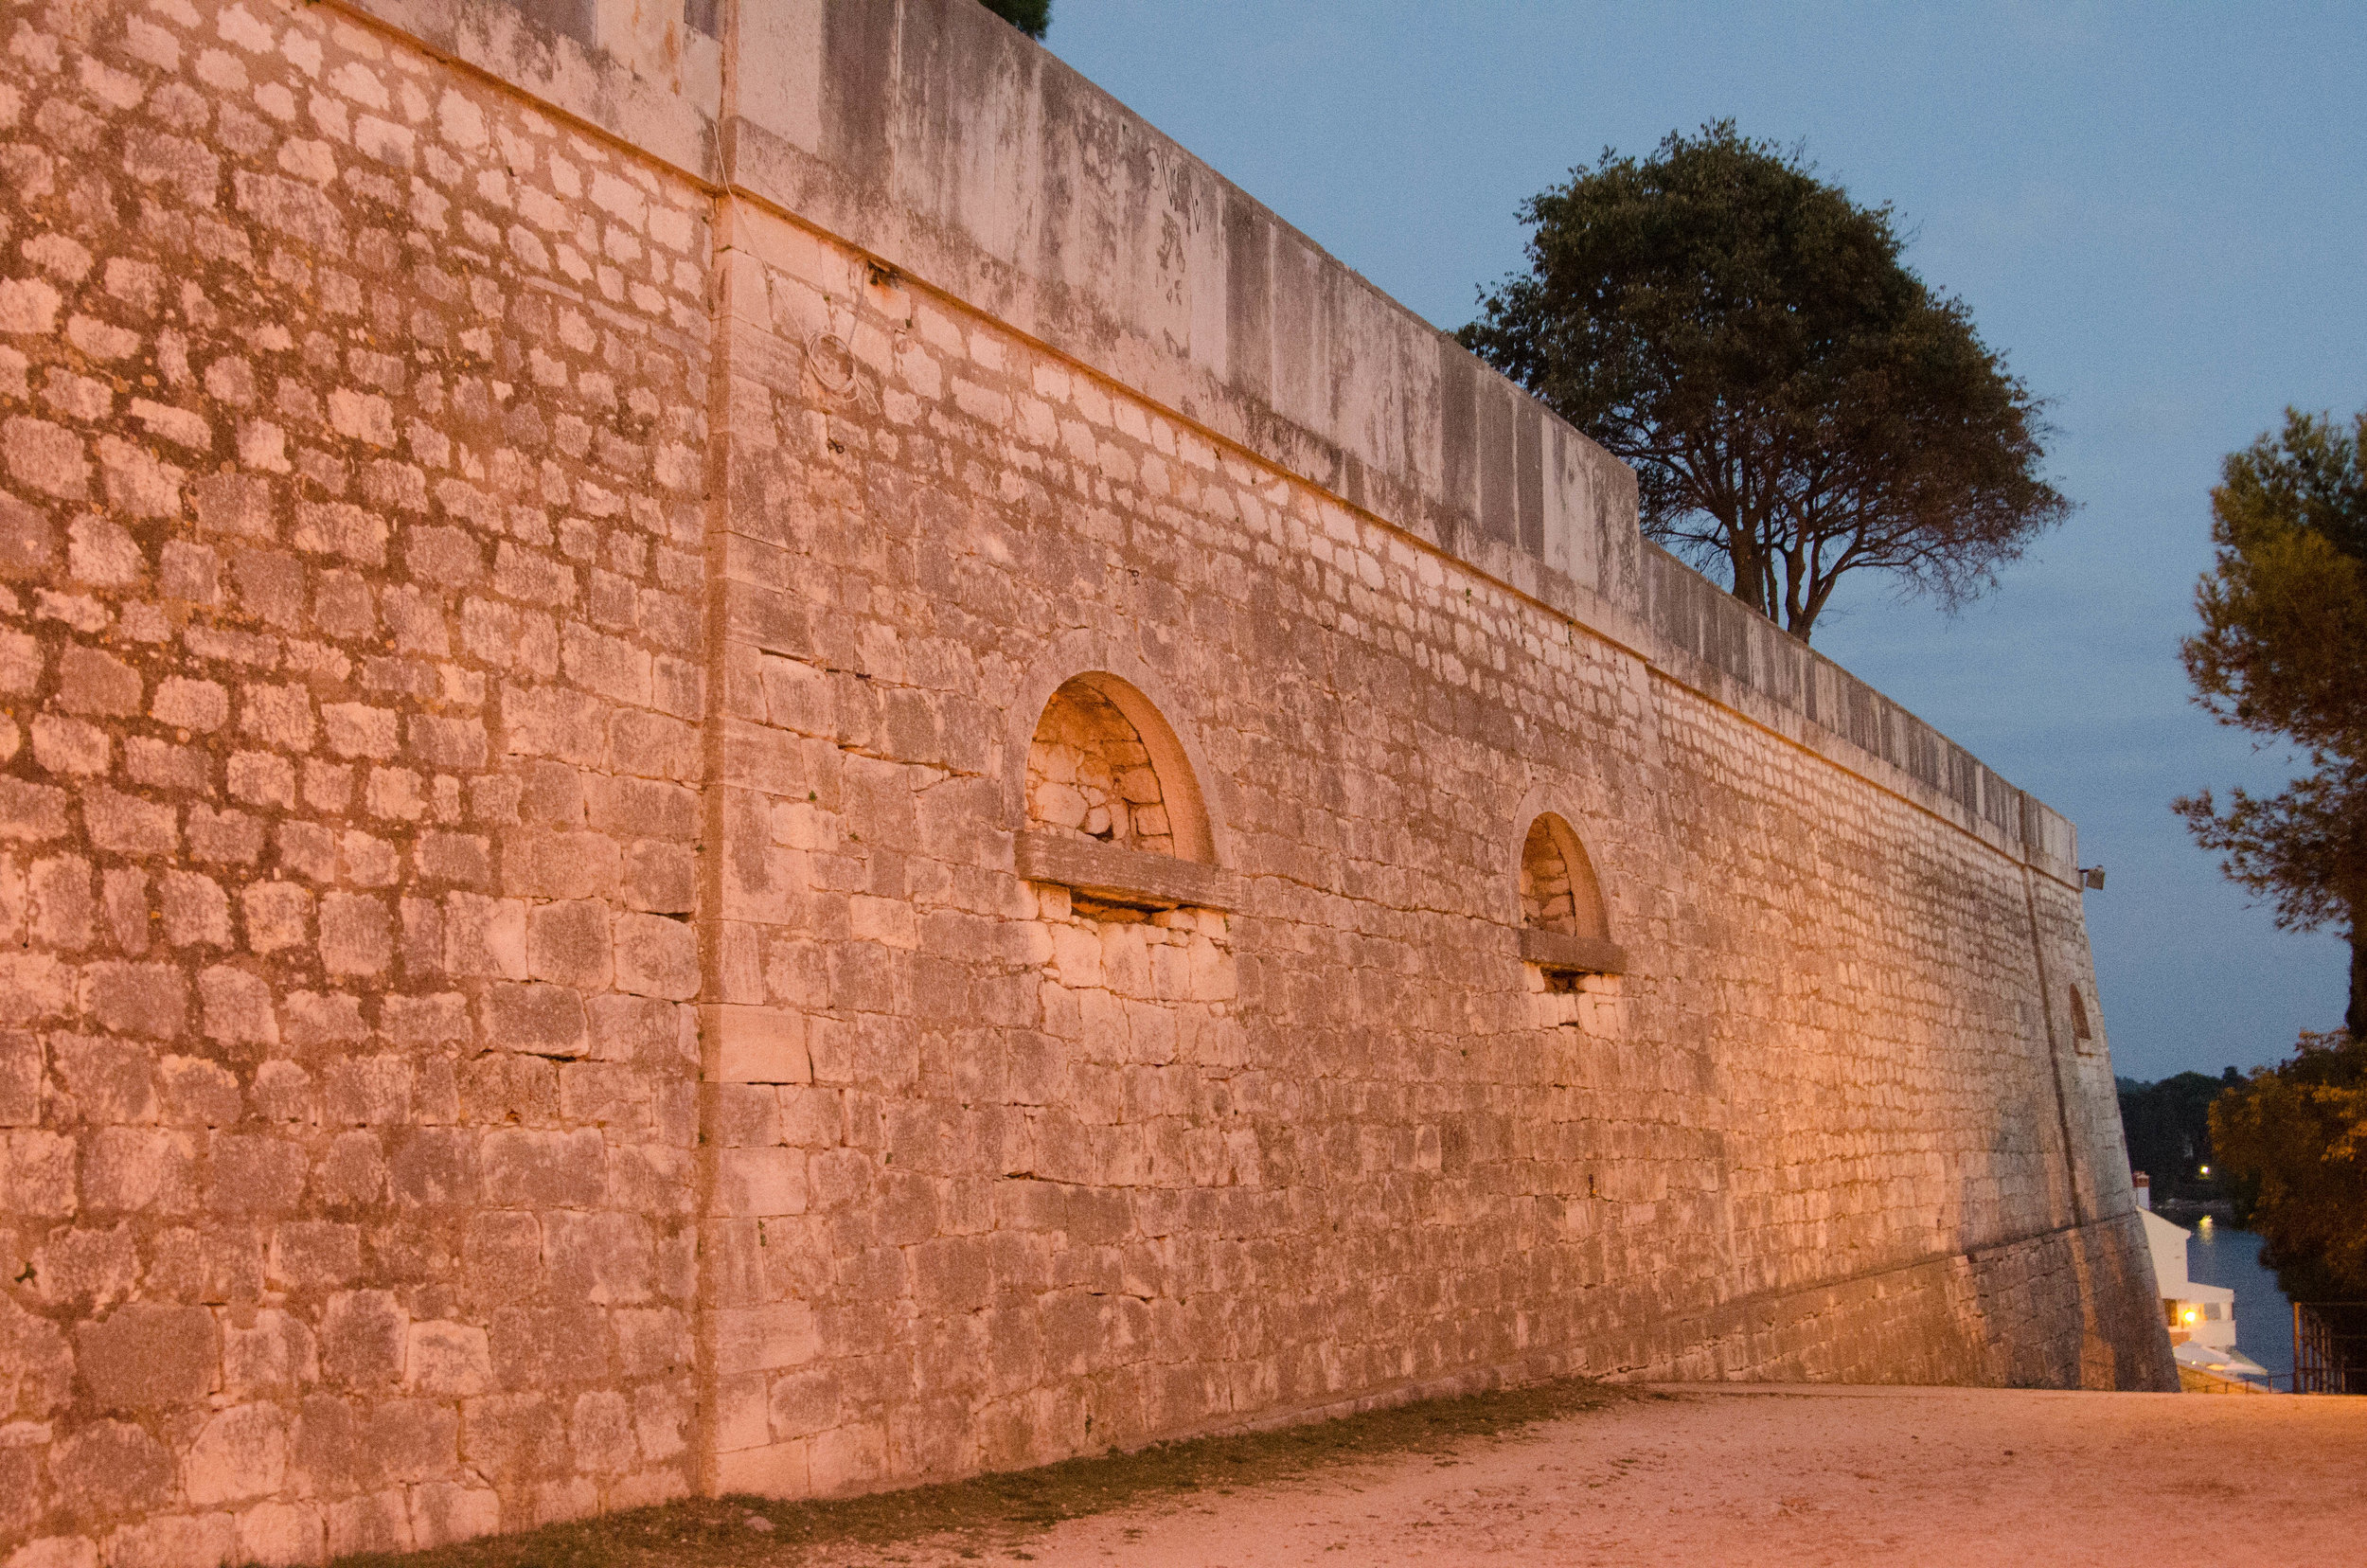 City wall, Rovinj, Istria, Croatia